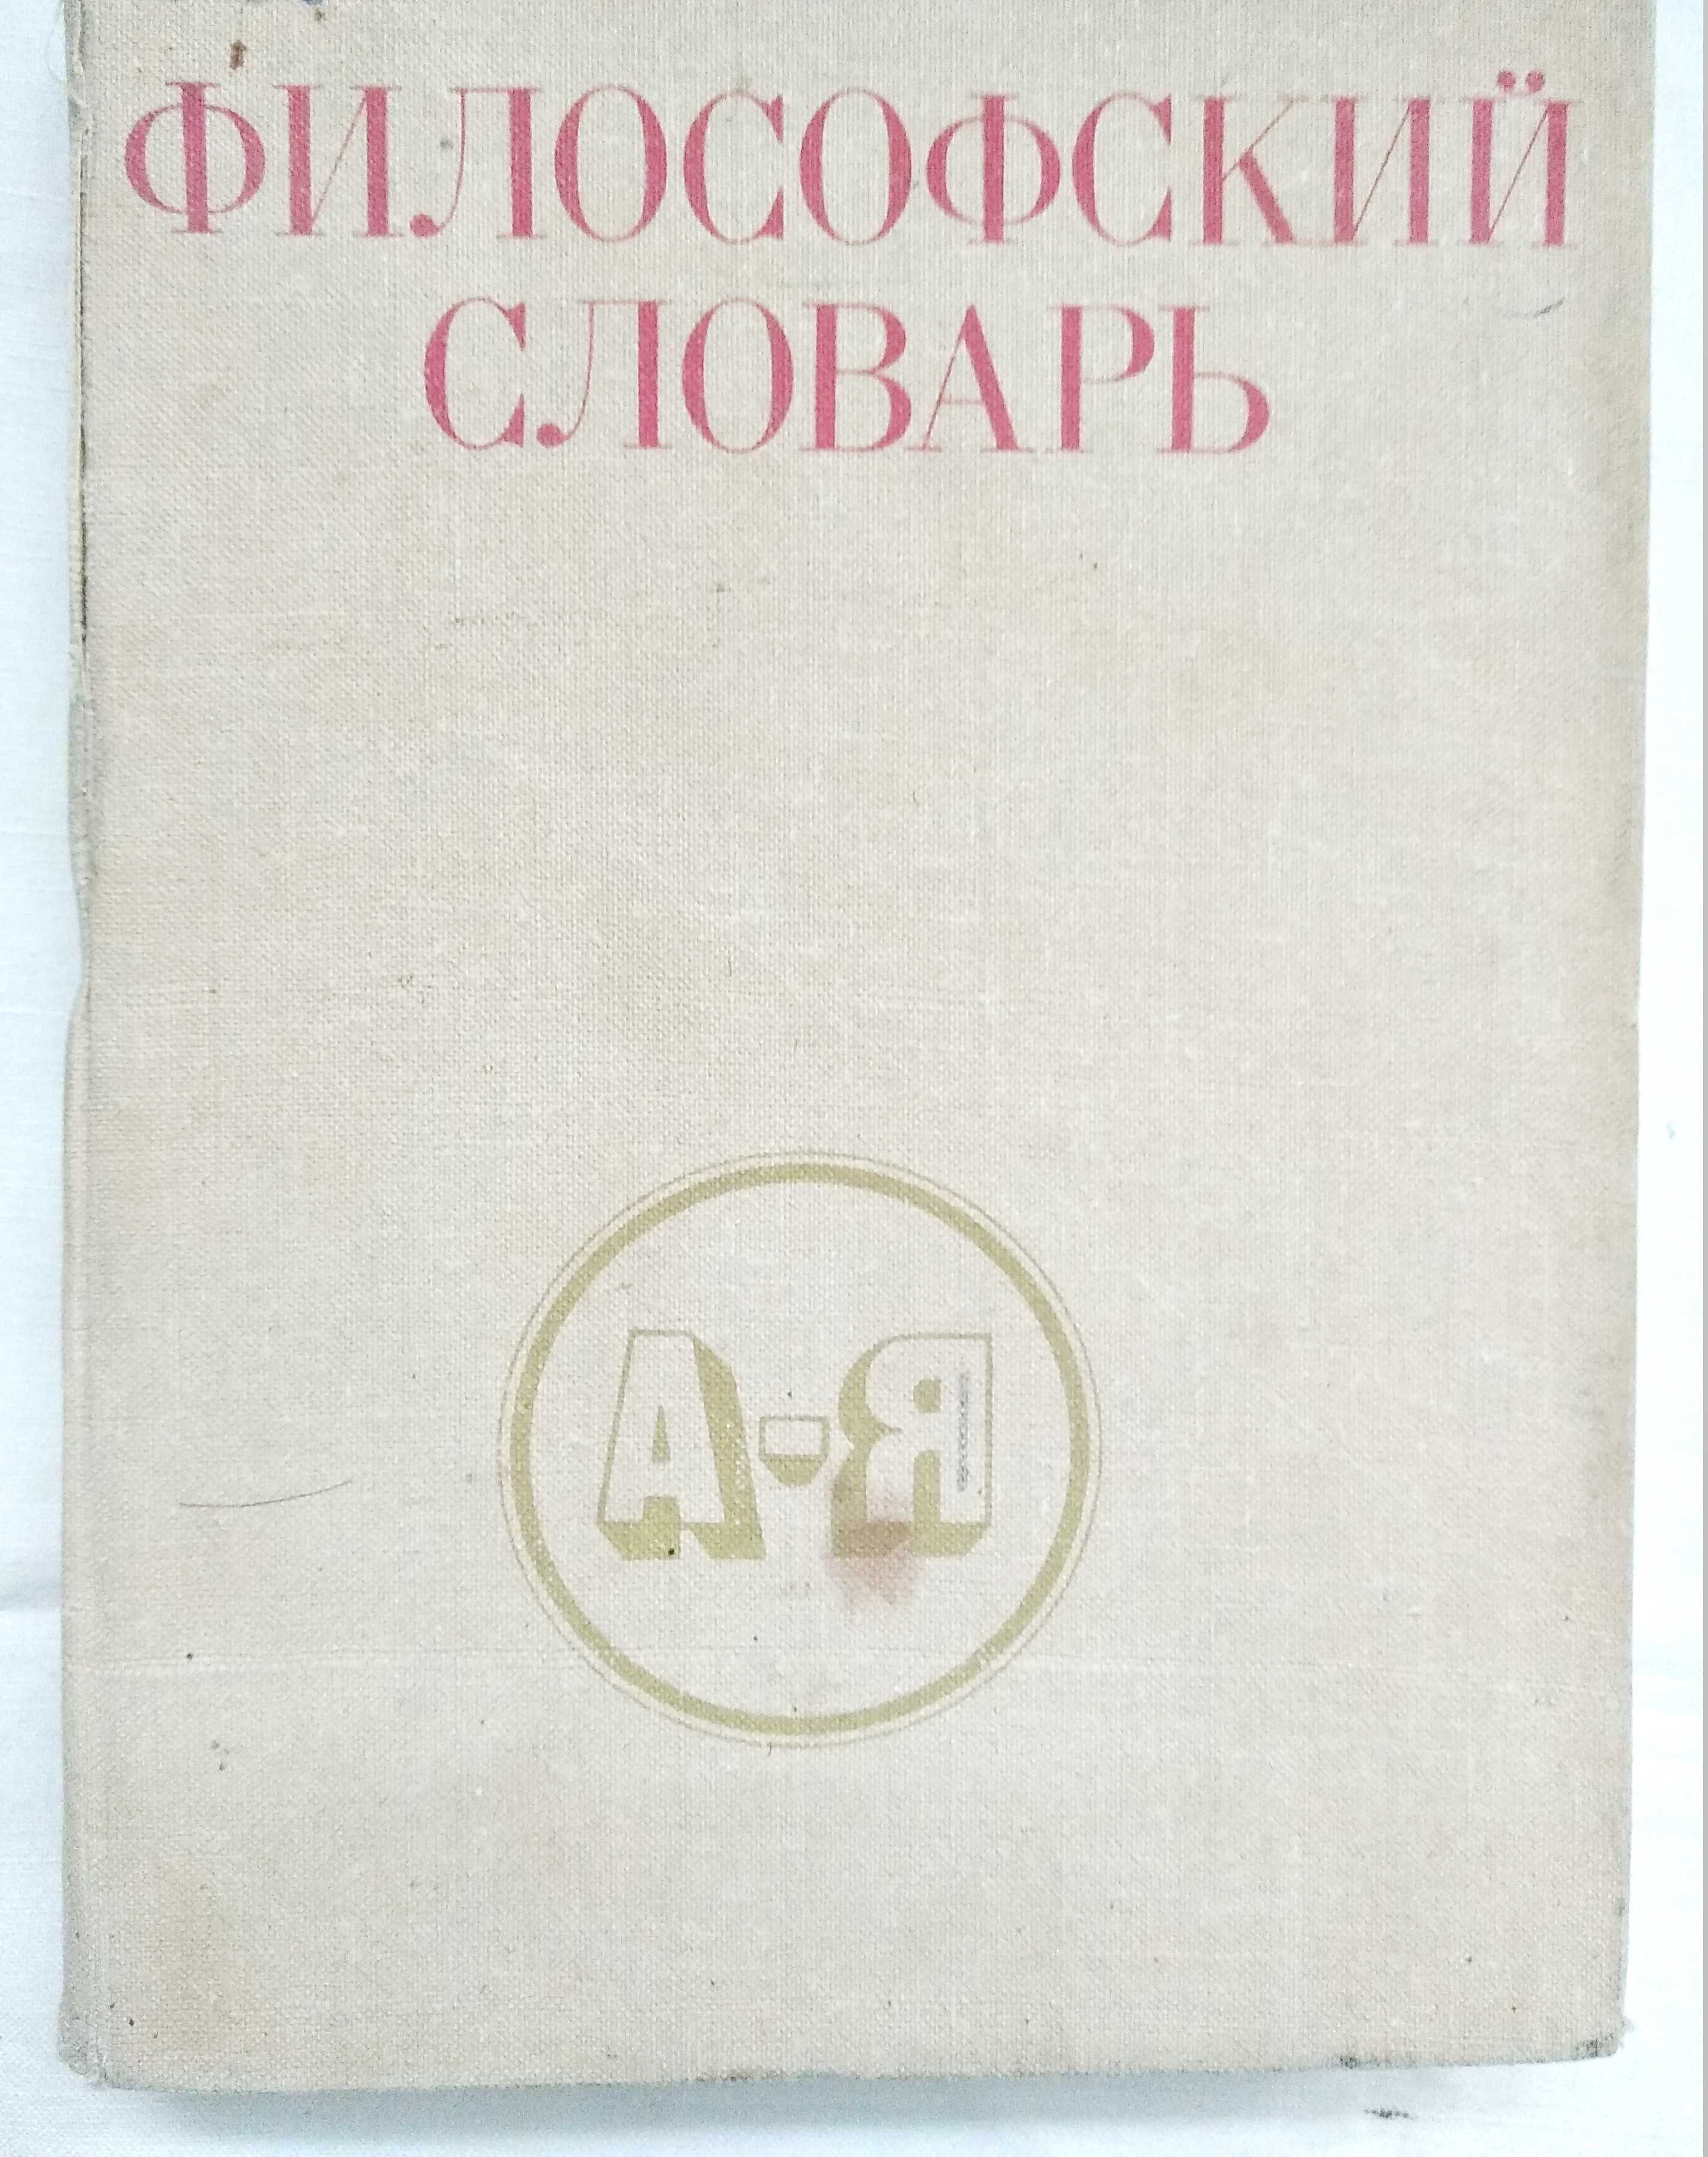 "Философский словарь" под ред Фролова 1980г. 4 изд